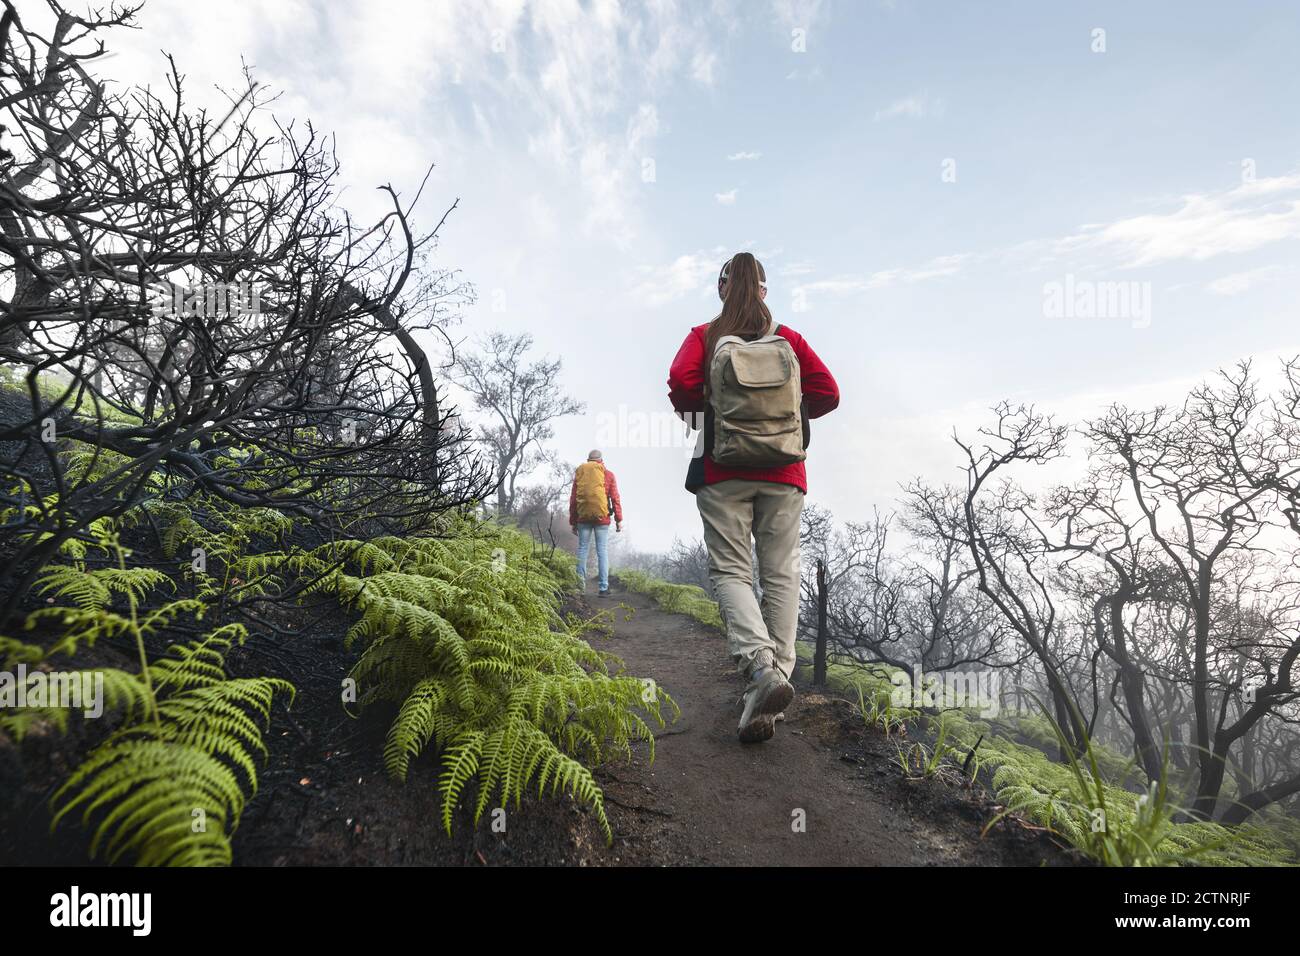 Zwei Touristen mit Rucksäcken wandern auf Vulkan oben in Säure Wolken und tote Bäume Stockfoto